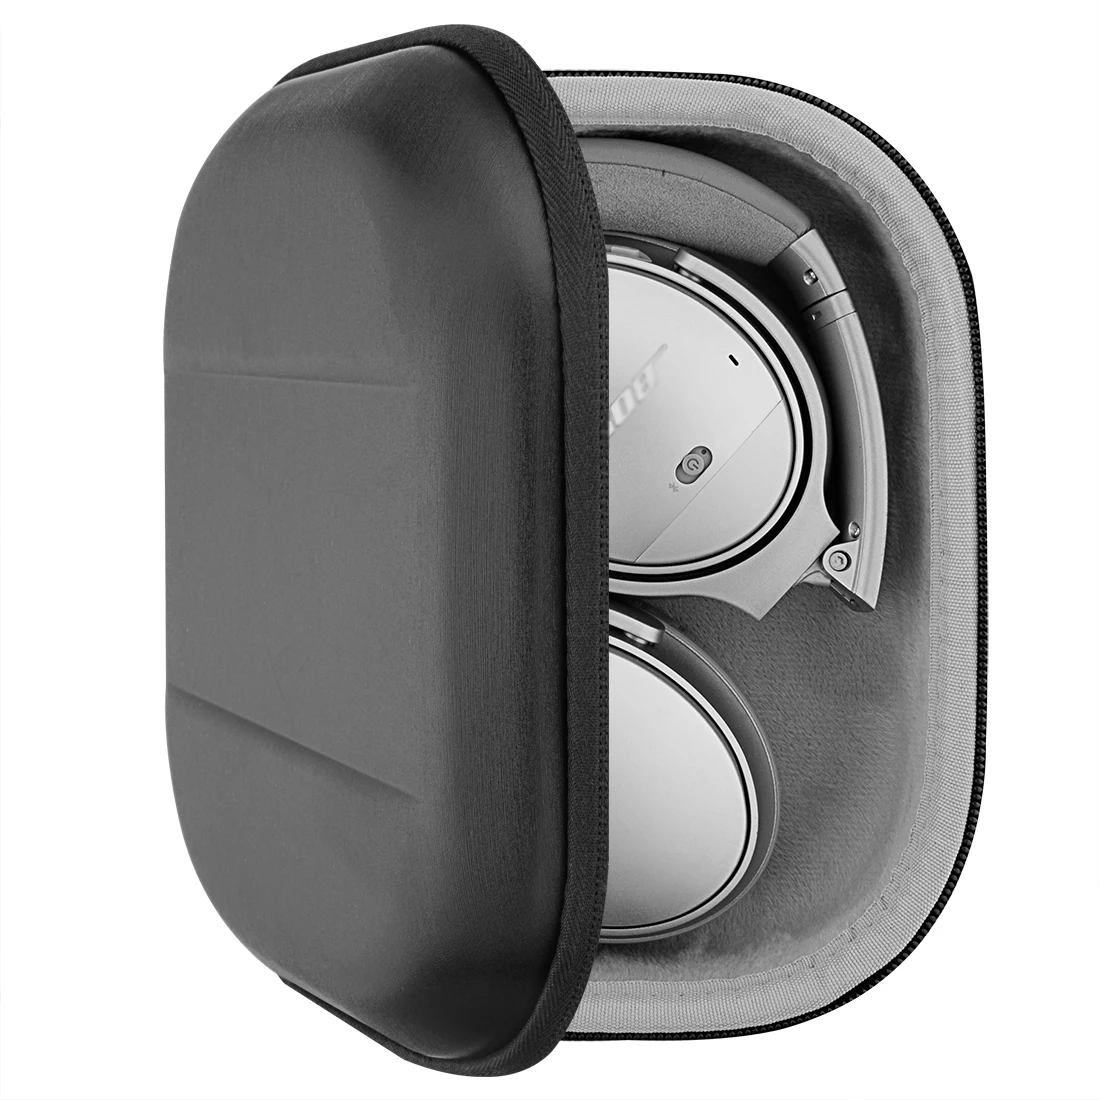 

Чехол для наушников Geekria для Bose QC35 II игровая гарнитура, QuietComfort35 II, Жесткий мобильный защитный ударный беспроводной bluetooth earphone пакет для хране...